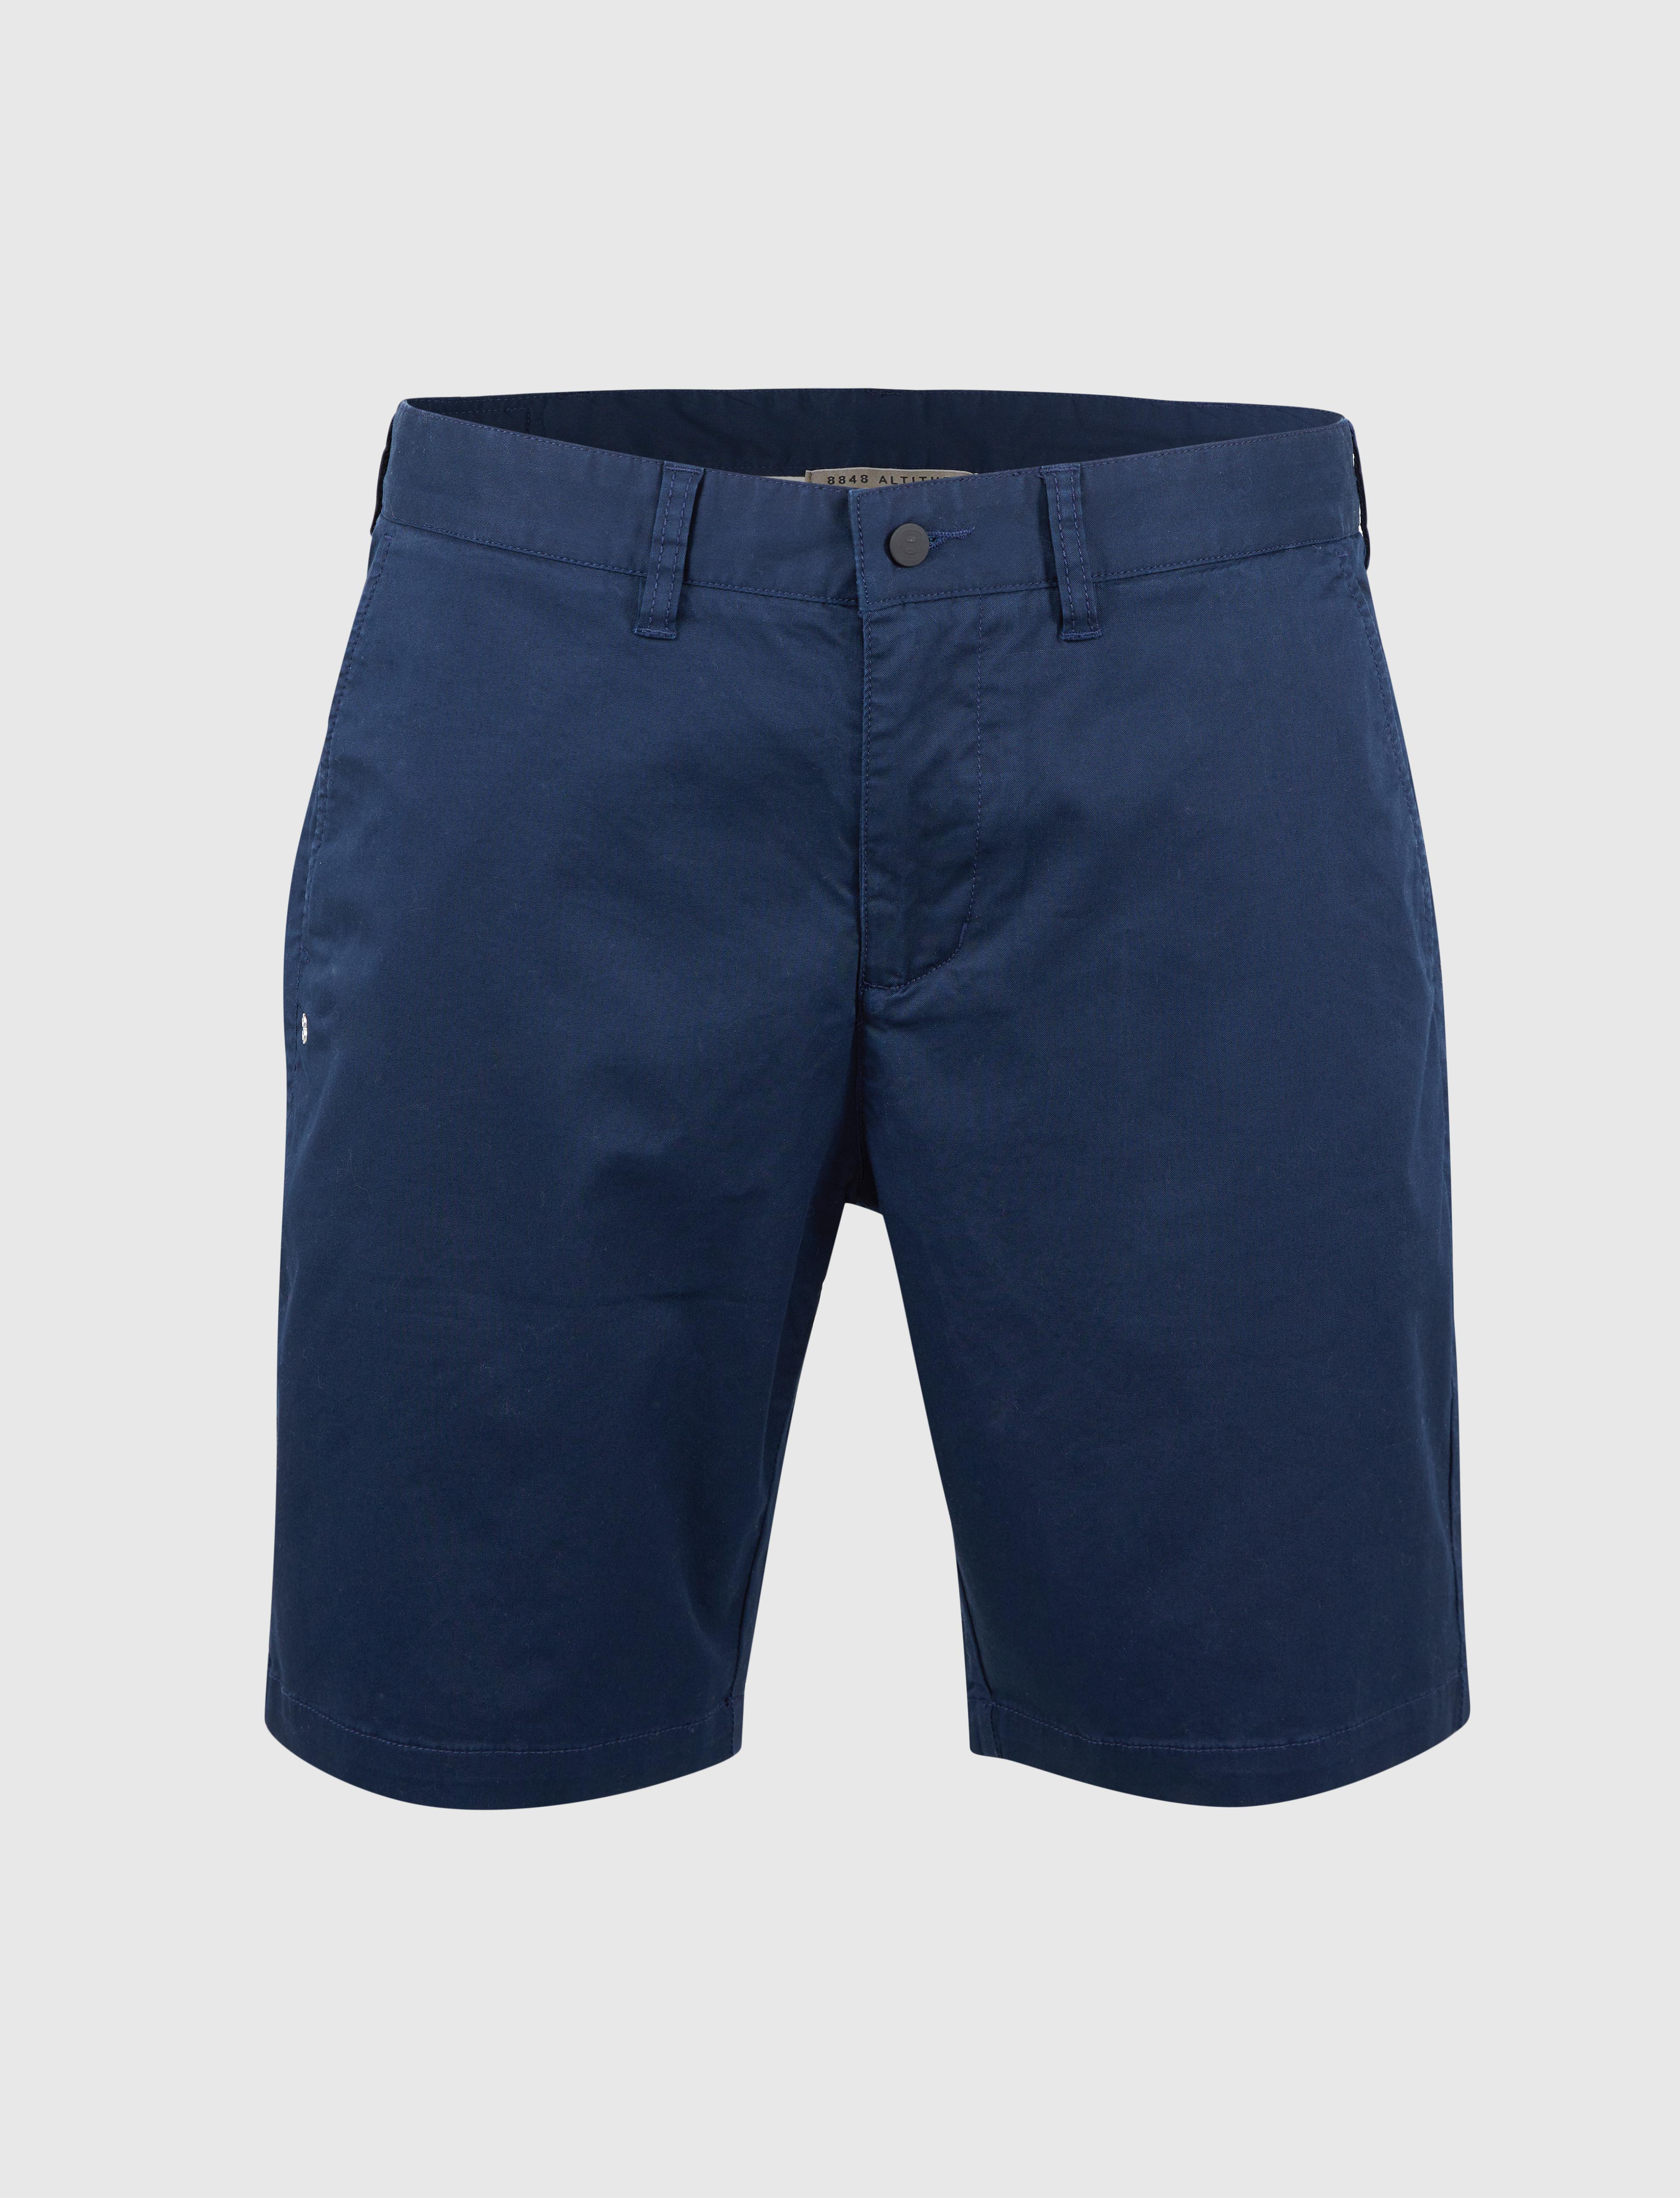 Lugano 2.0 Shorts Navy - Navy blue shorts men